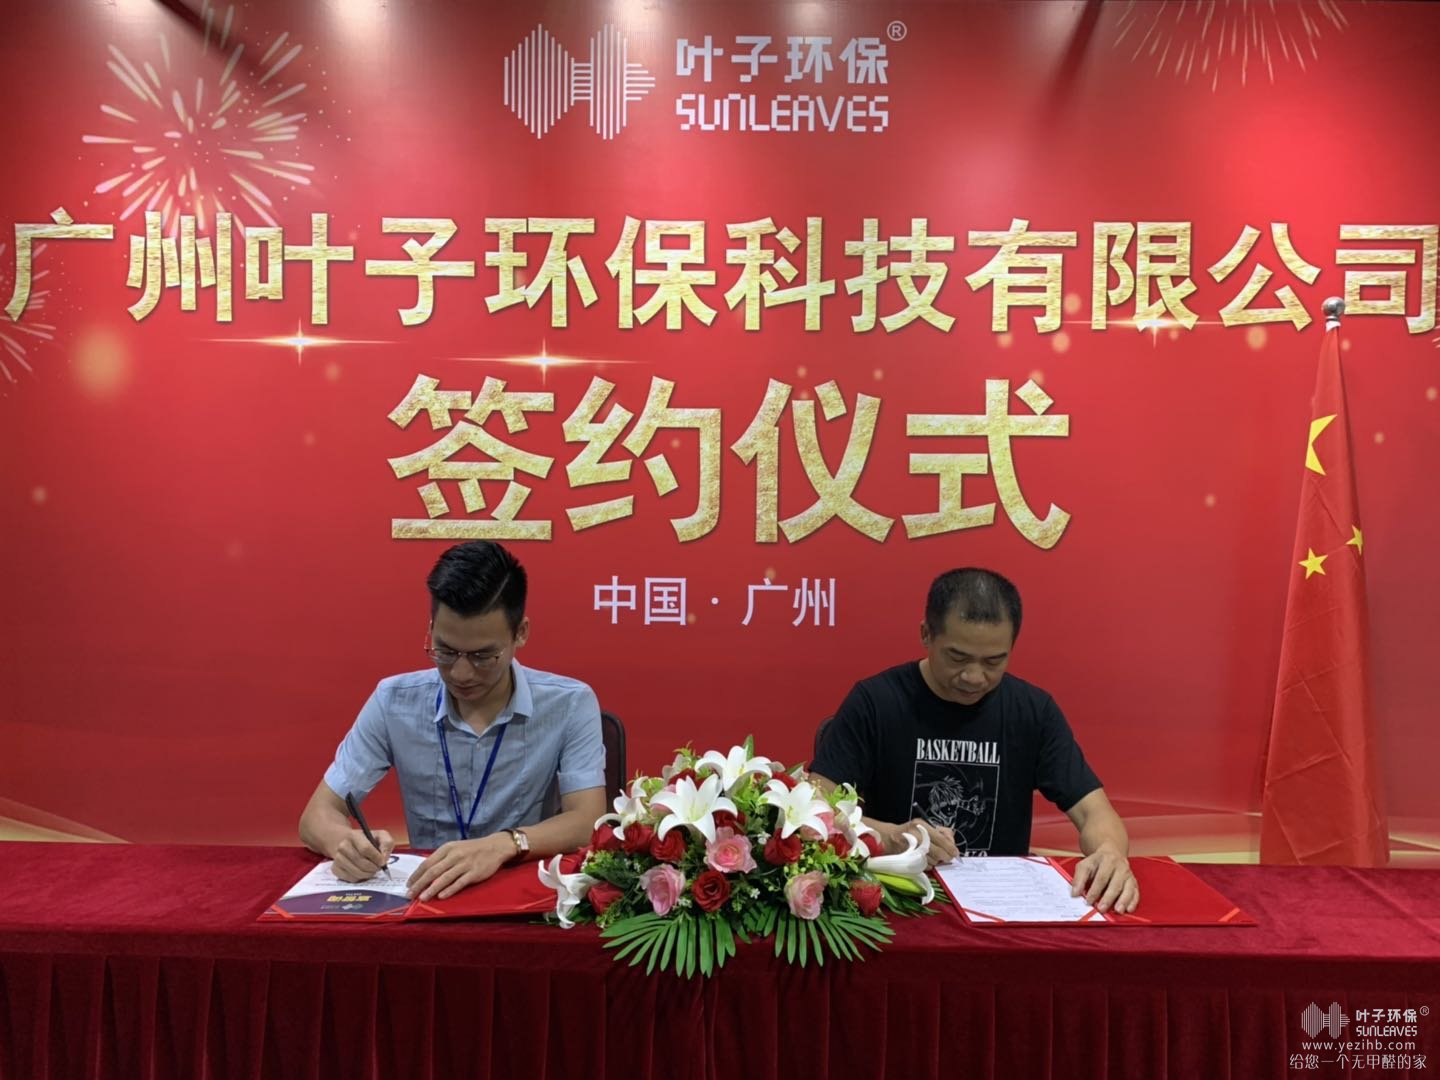 6月10日广州州加盟商签约叶子环保，共赢除甲醛未来